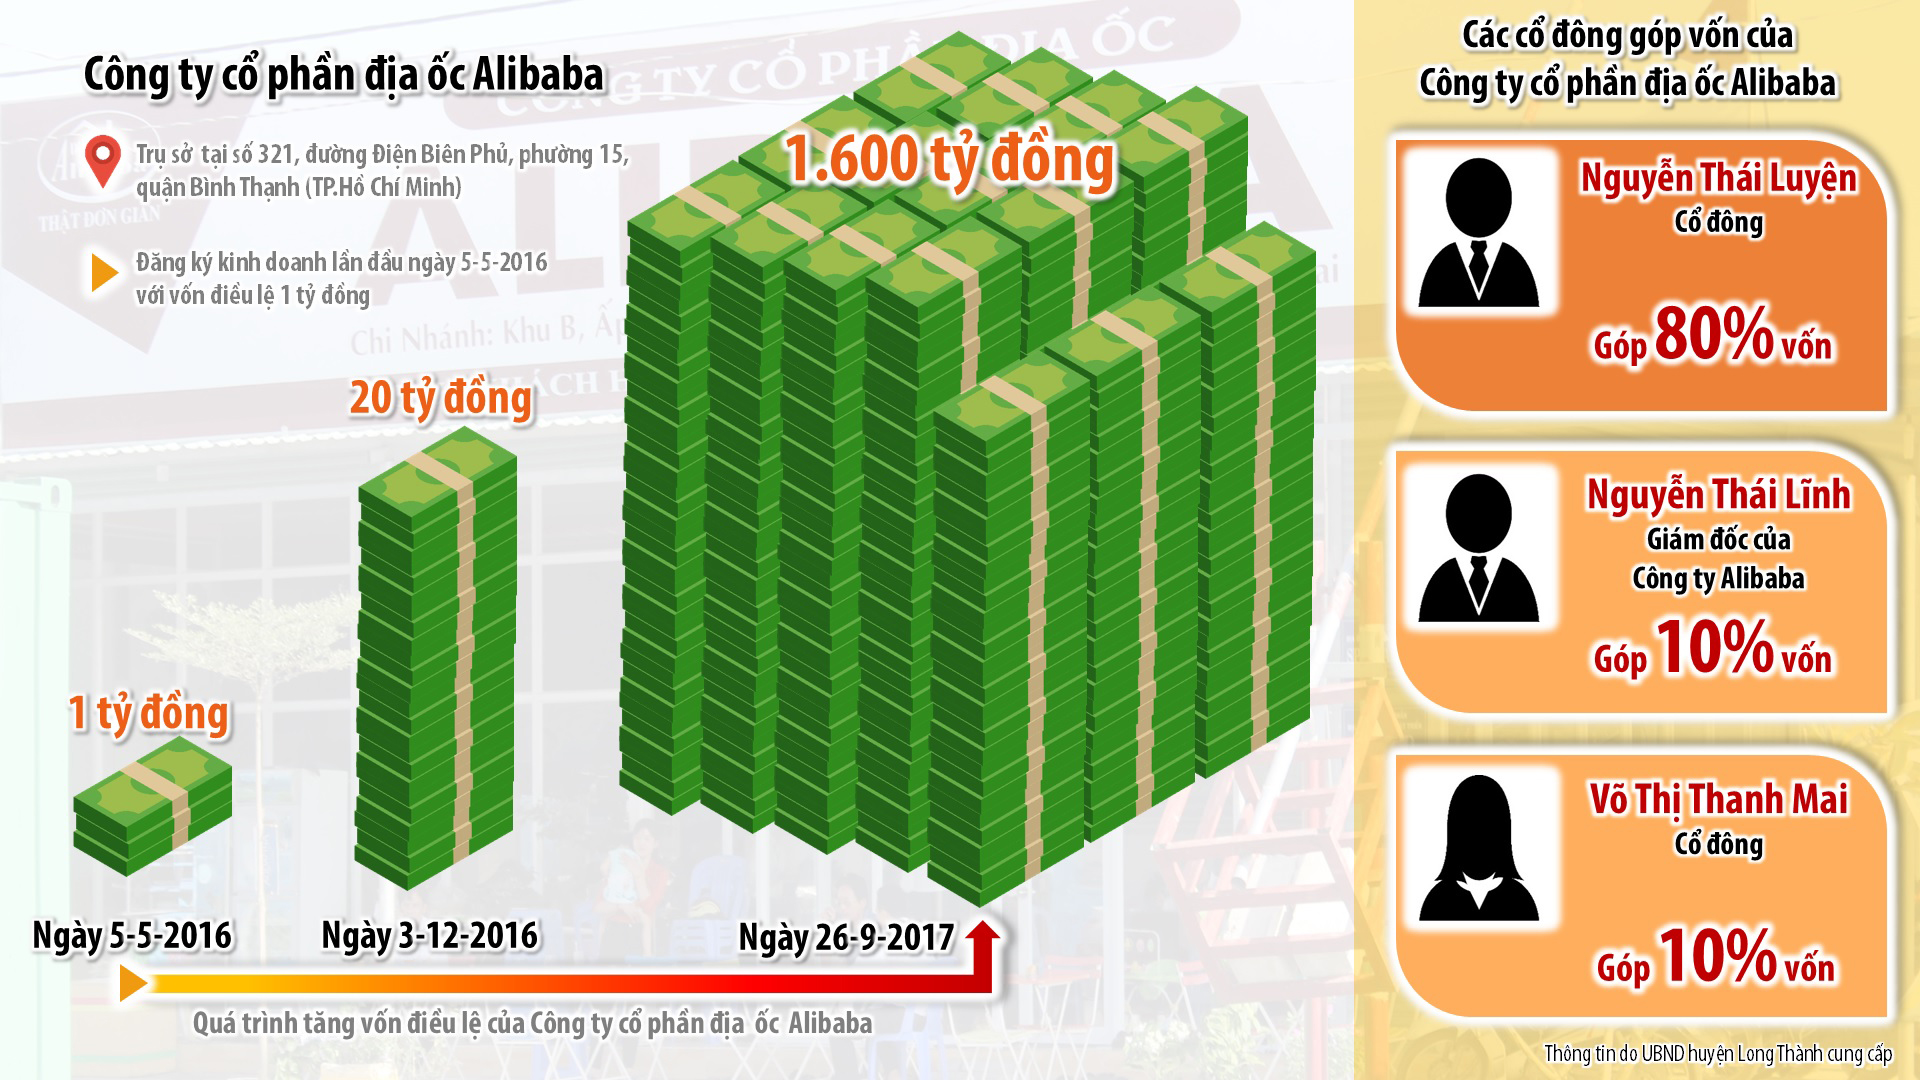 Biểu đồ thể hiện quá trình tăng vốn điều lệ và các cổ đông góp vốn của Công ty cổ phần địa ốc Alibaba.  Ảnh: Nguyệt Hạ - Đồ họa: Hải Quân